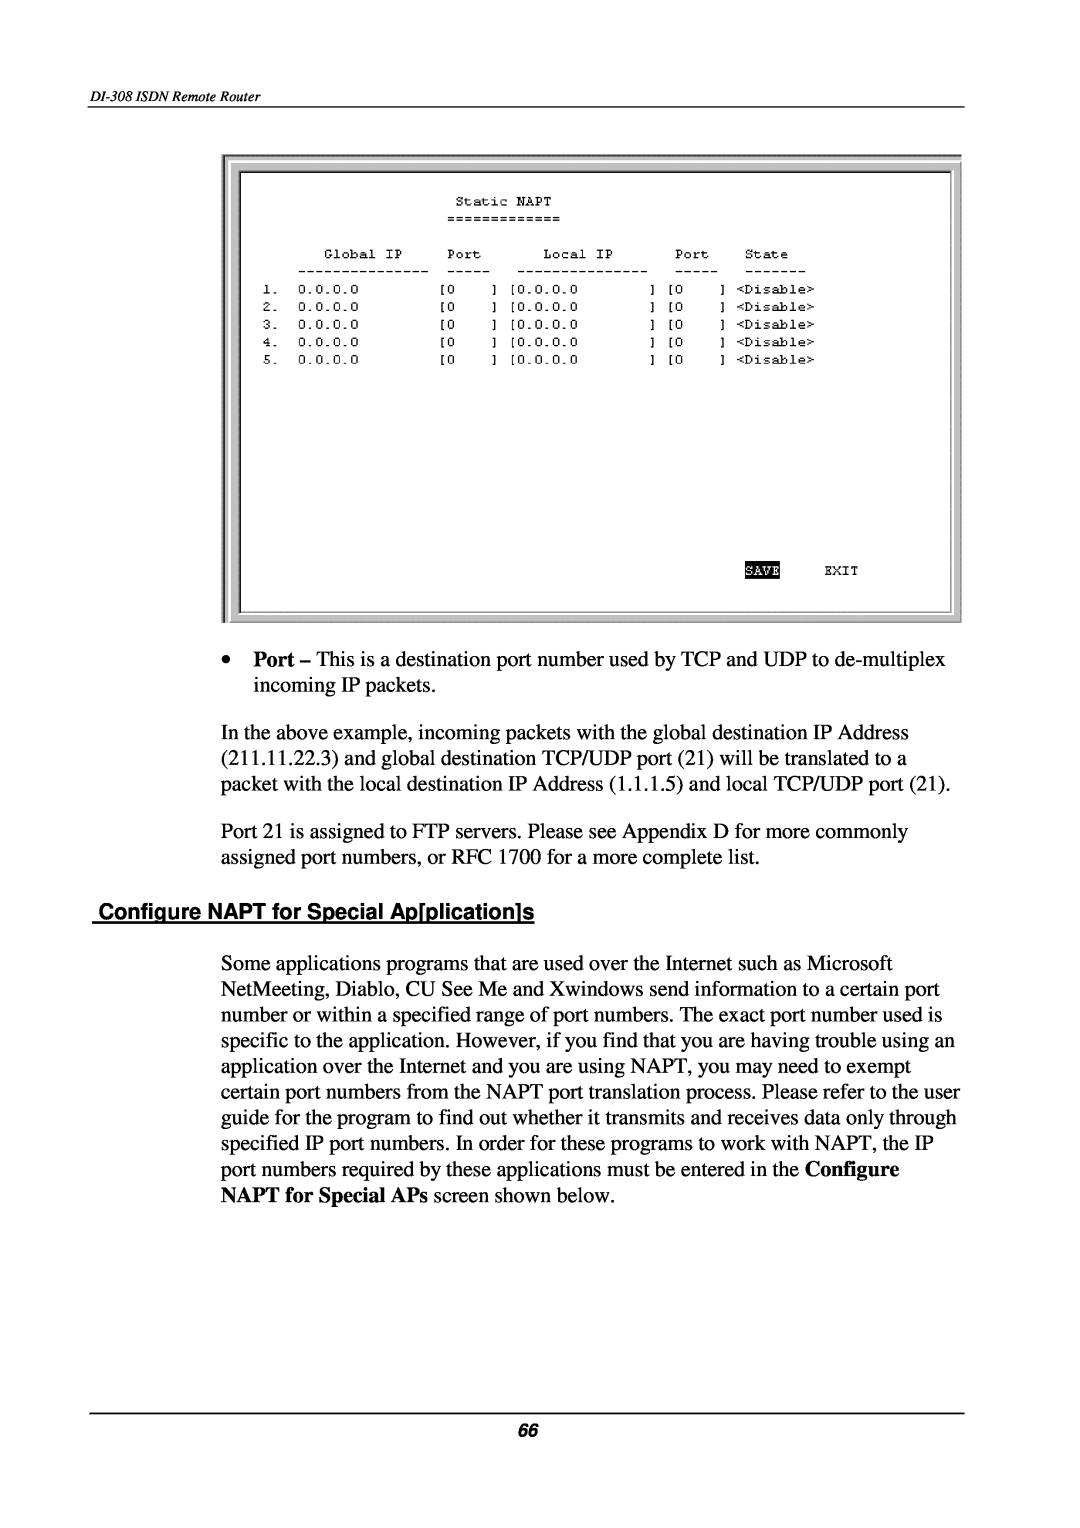 D-Link DI-308 manual Configure NAPT for Special Applications 